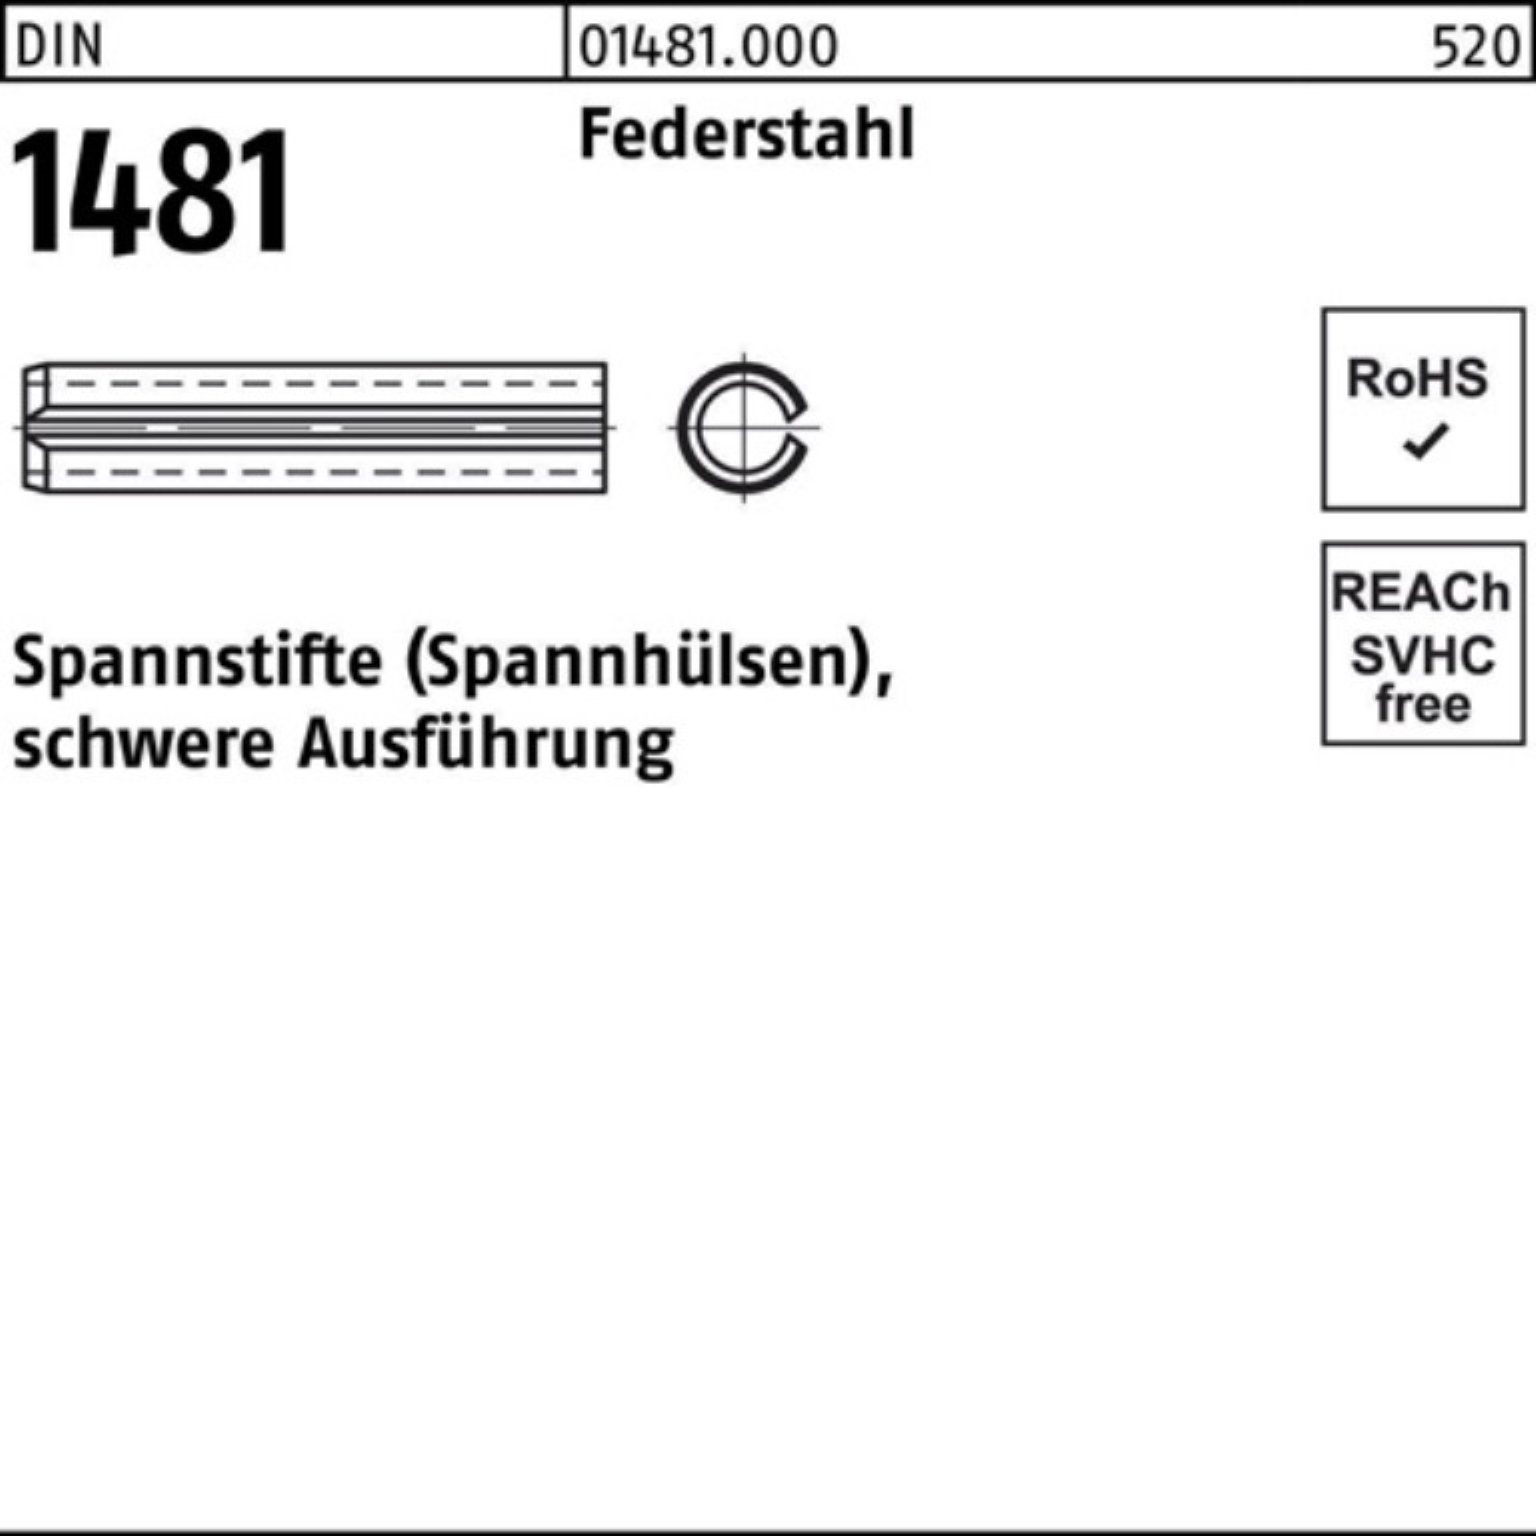 1481 Federstahl Spannstift schwere 85 Ausführung Spannstift 100er Pack Reyher 10 DIN 6x